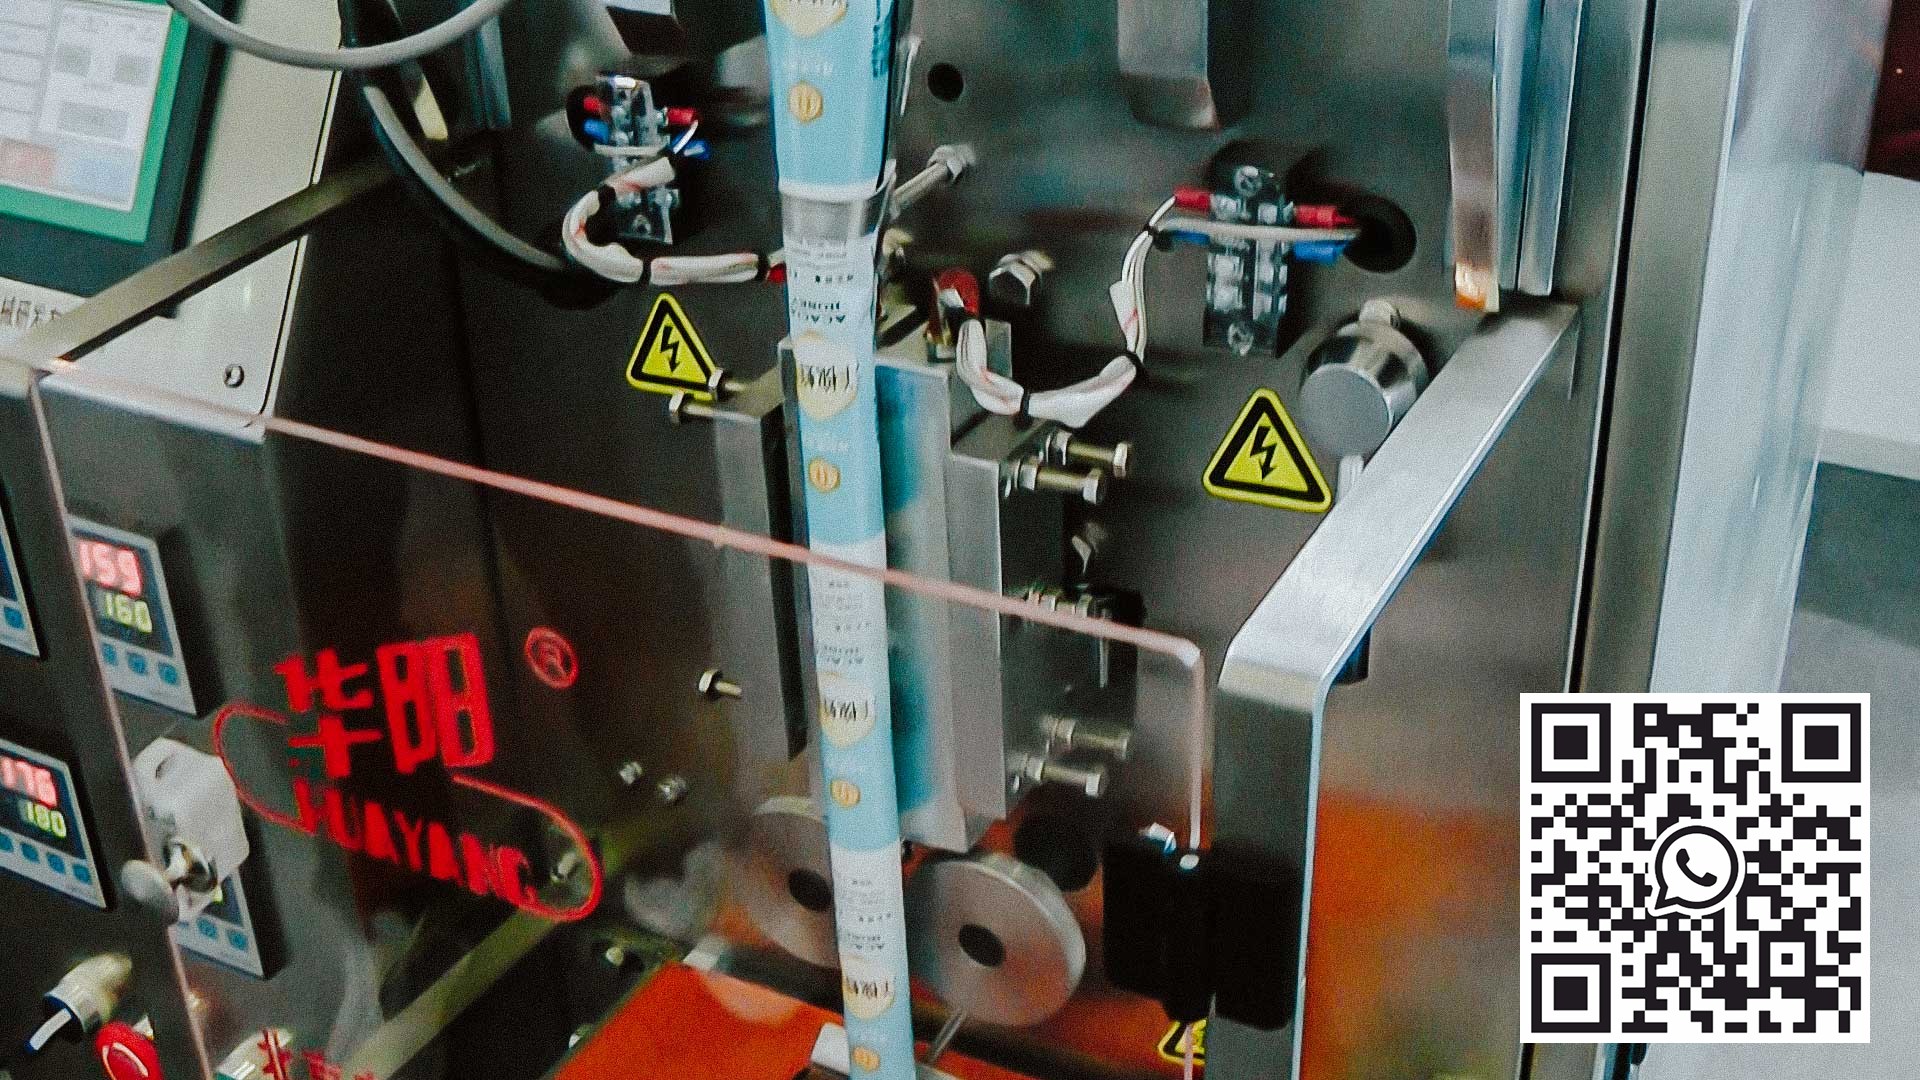 آلة تعبئة المسحوق الأوتوماتيكية لتعبئة المساحيق في أكياس